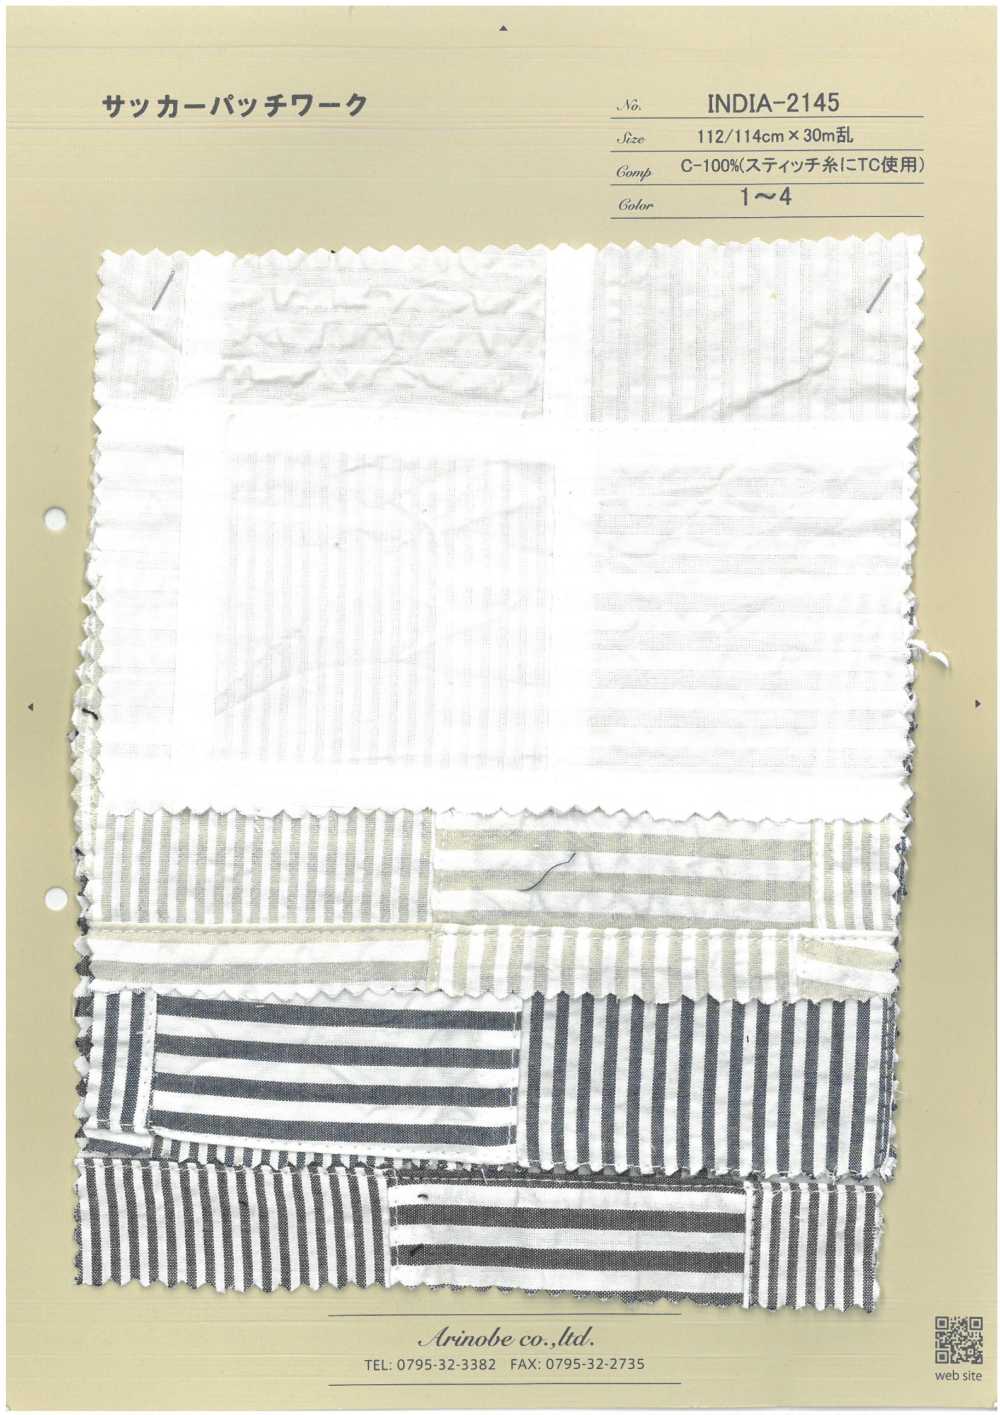 INDIA-2145 Chắp Mảnh Vải Sọc Nhăn ARINOBE CO., LTD.